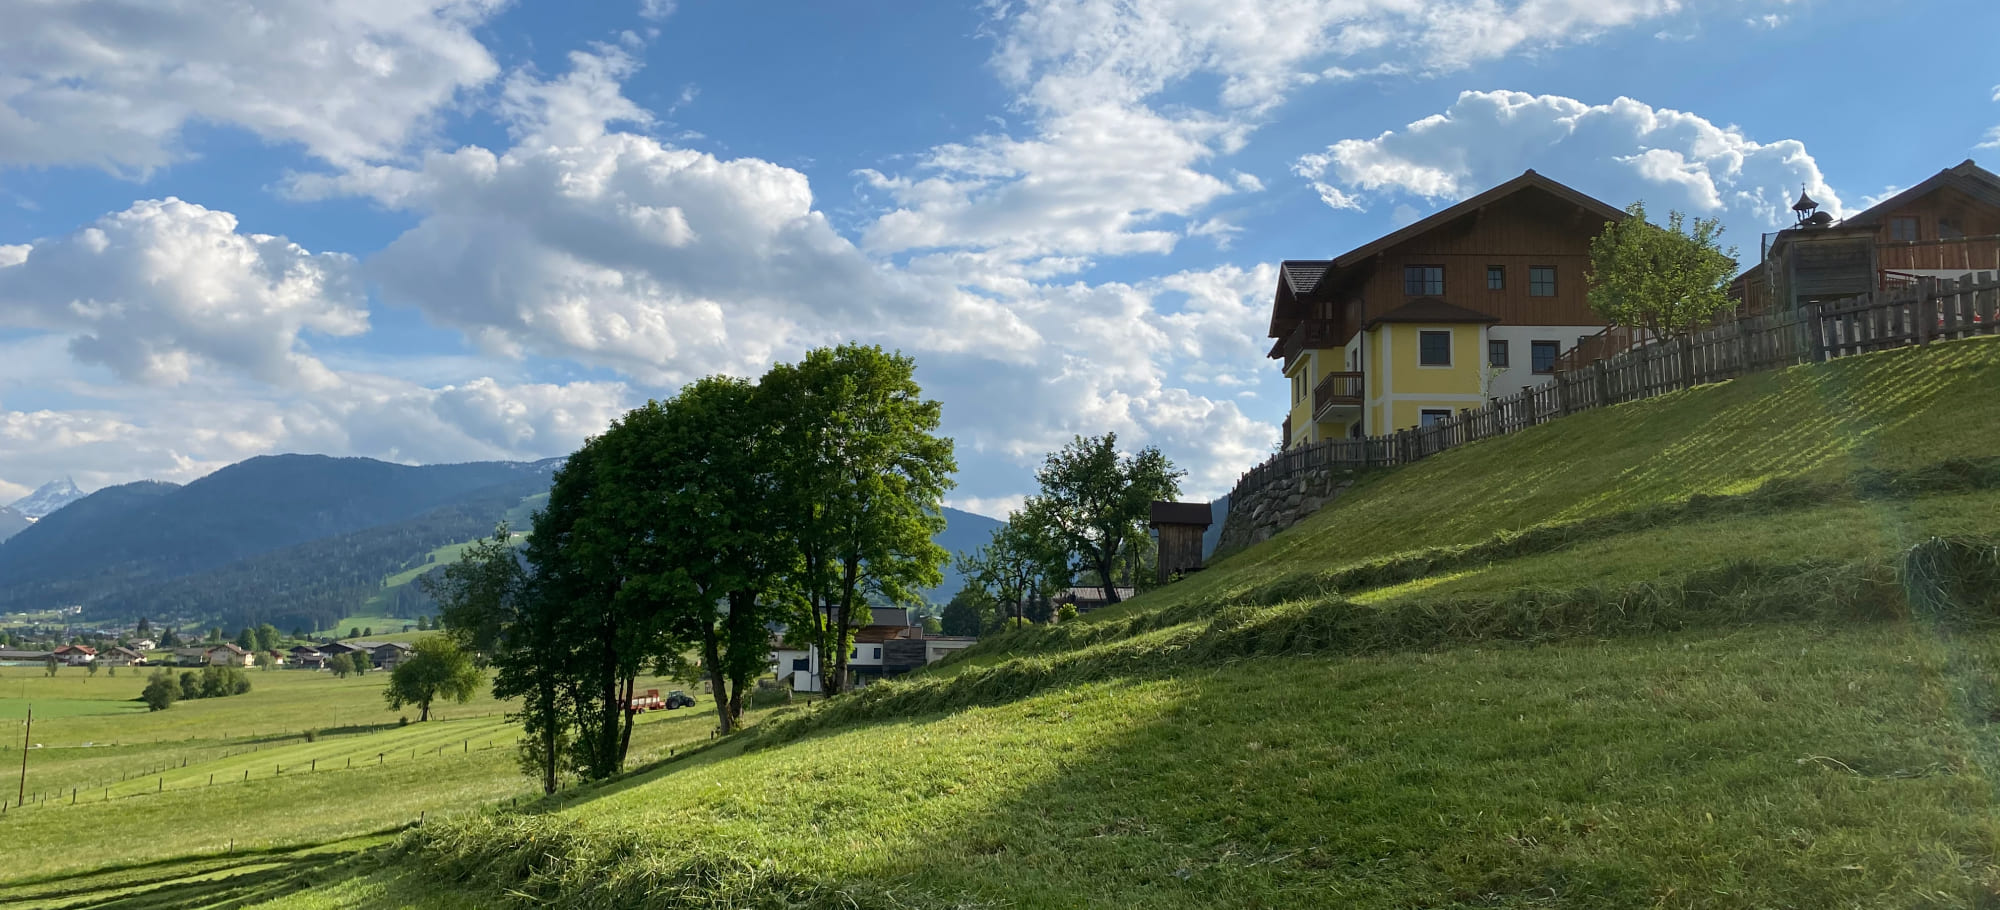 Ferienwohnungen Unterbichl in Flachau